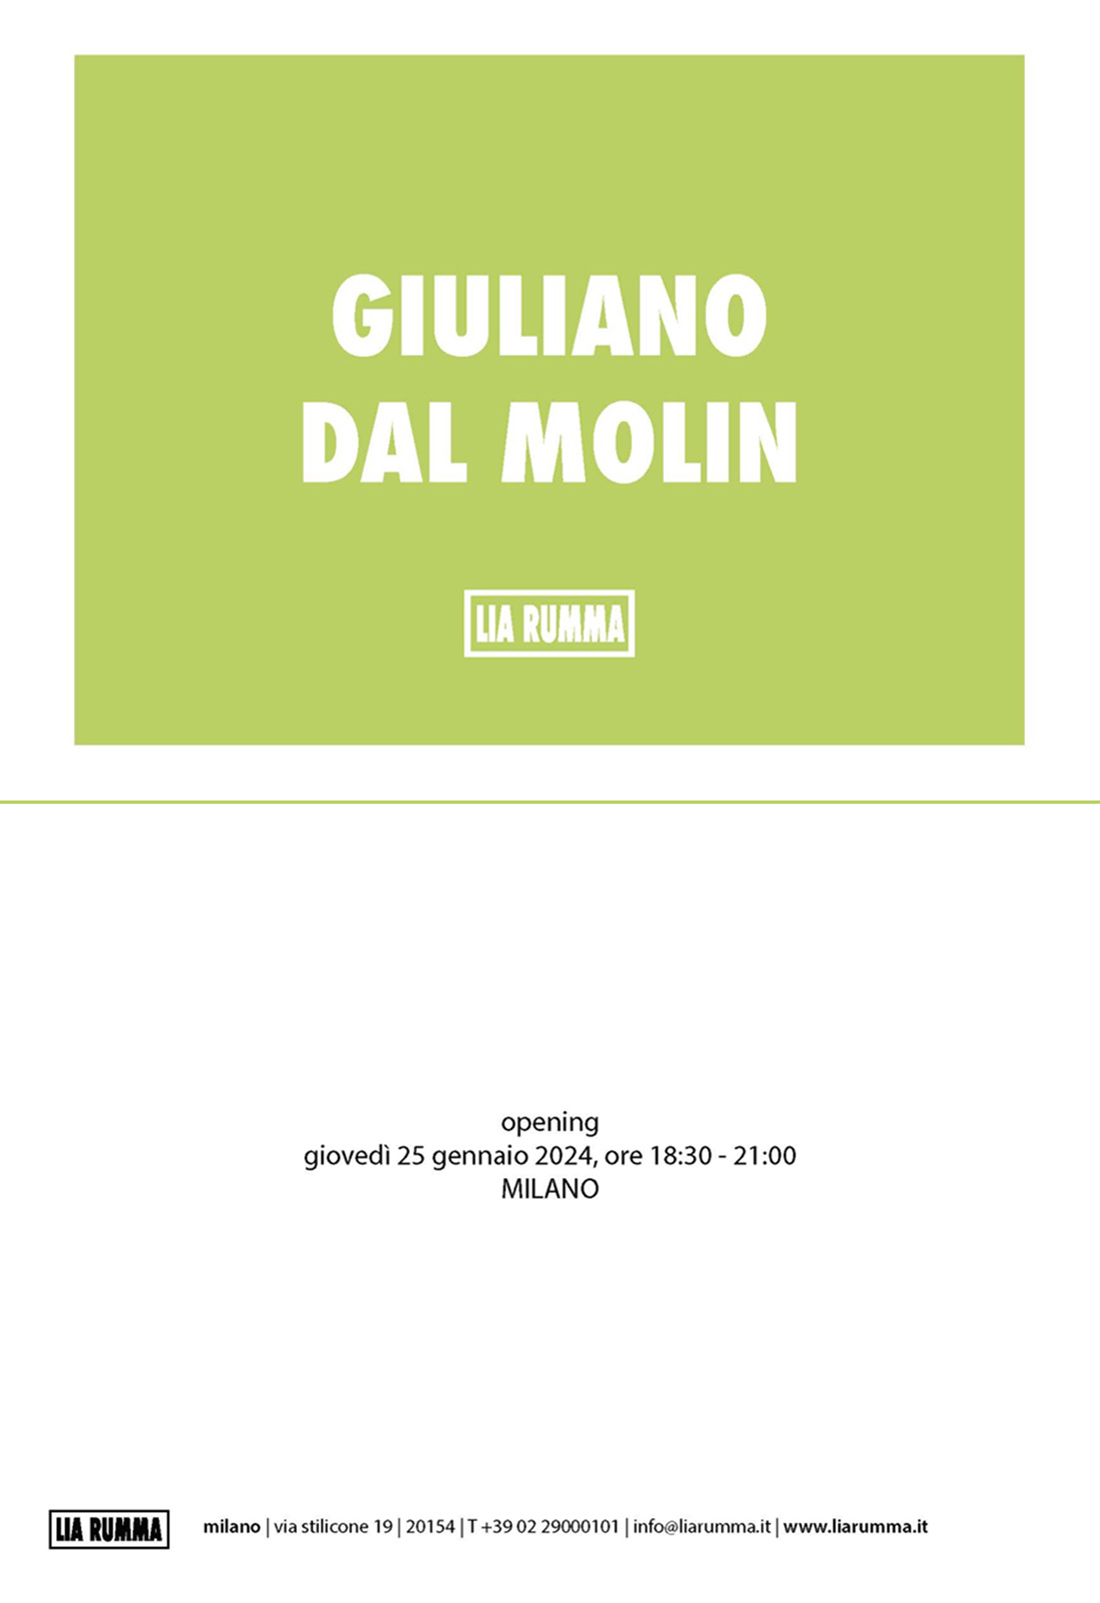 Giuliano Dal Molin, Galleria Lia Rumma - Milano